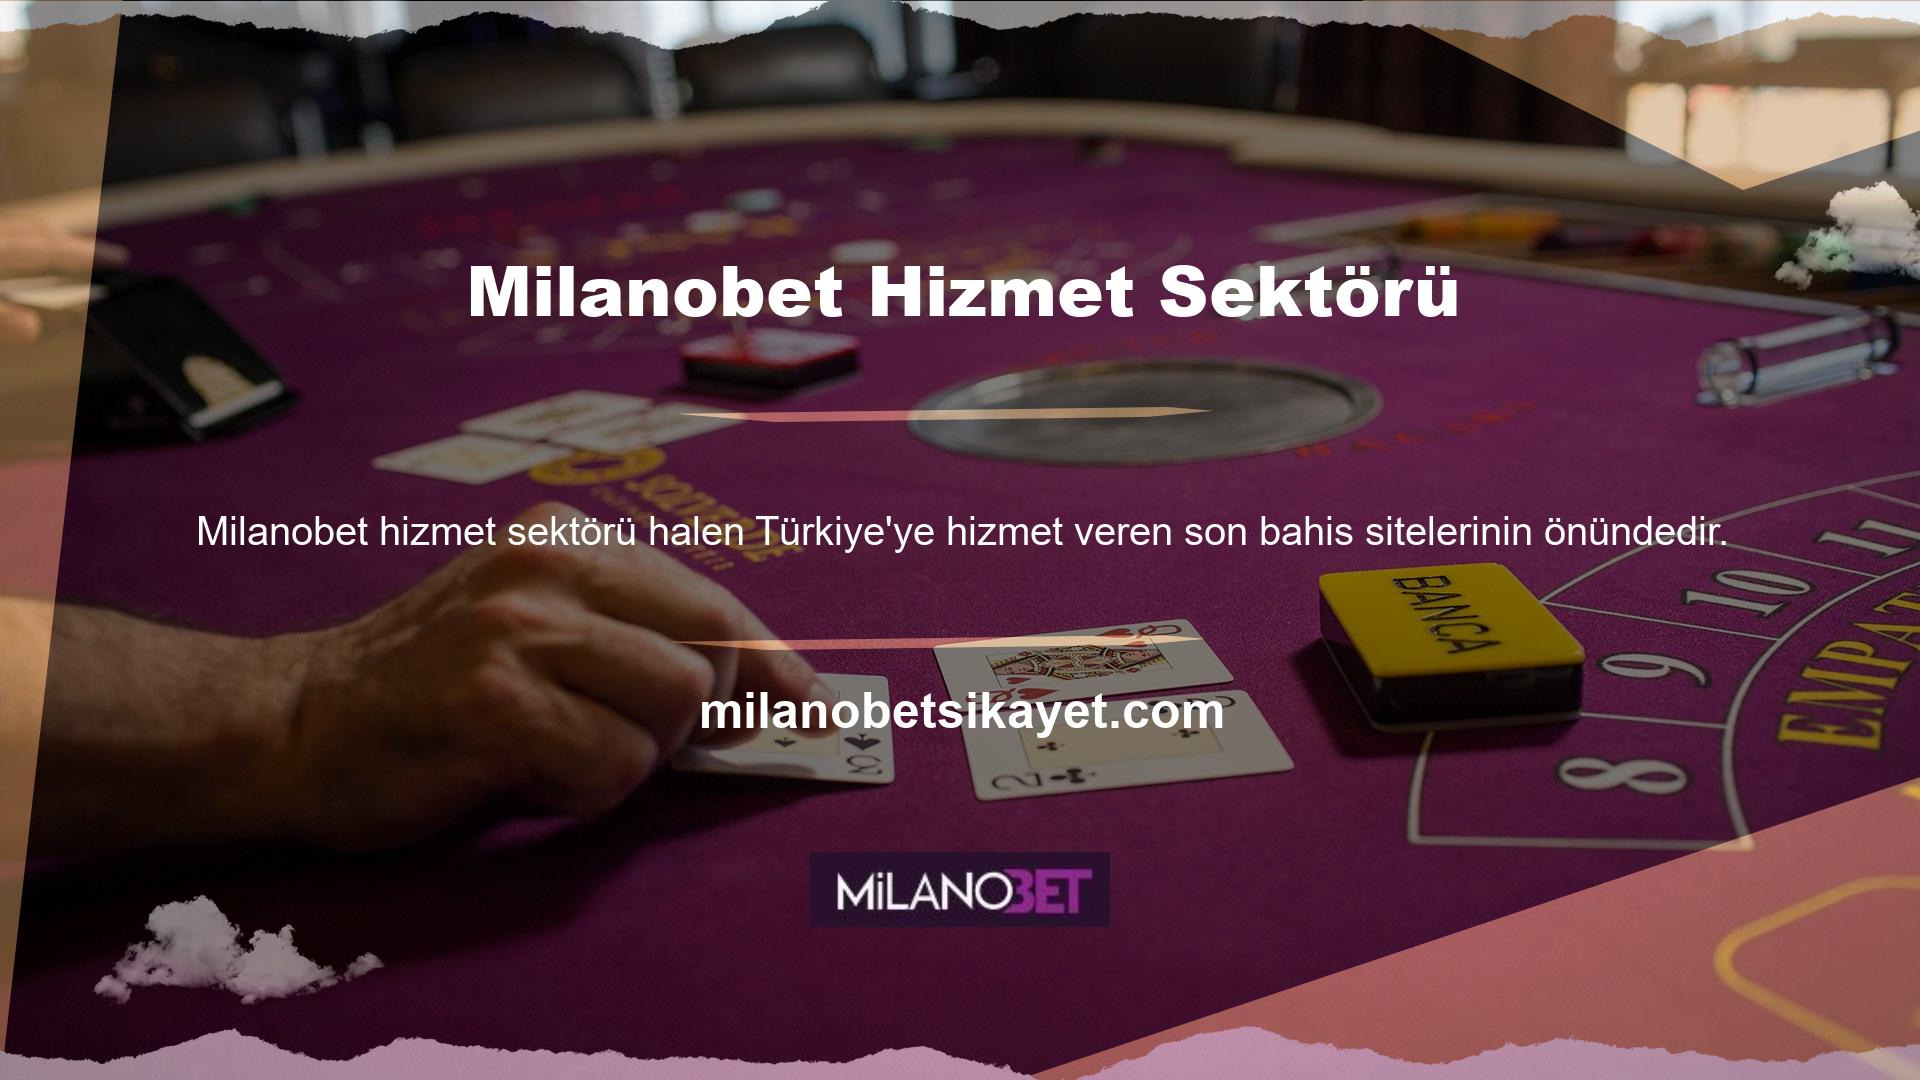 Milanobet Casino Sitesi, oyun meraklılarına sanal piyango, spor bahisleri, canlı casino ve casino bonusları dahil olmak üzere çok çeşitli hizmetler sunmaktadır